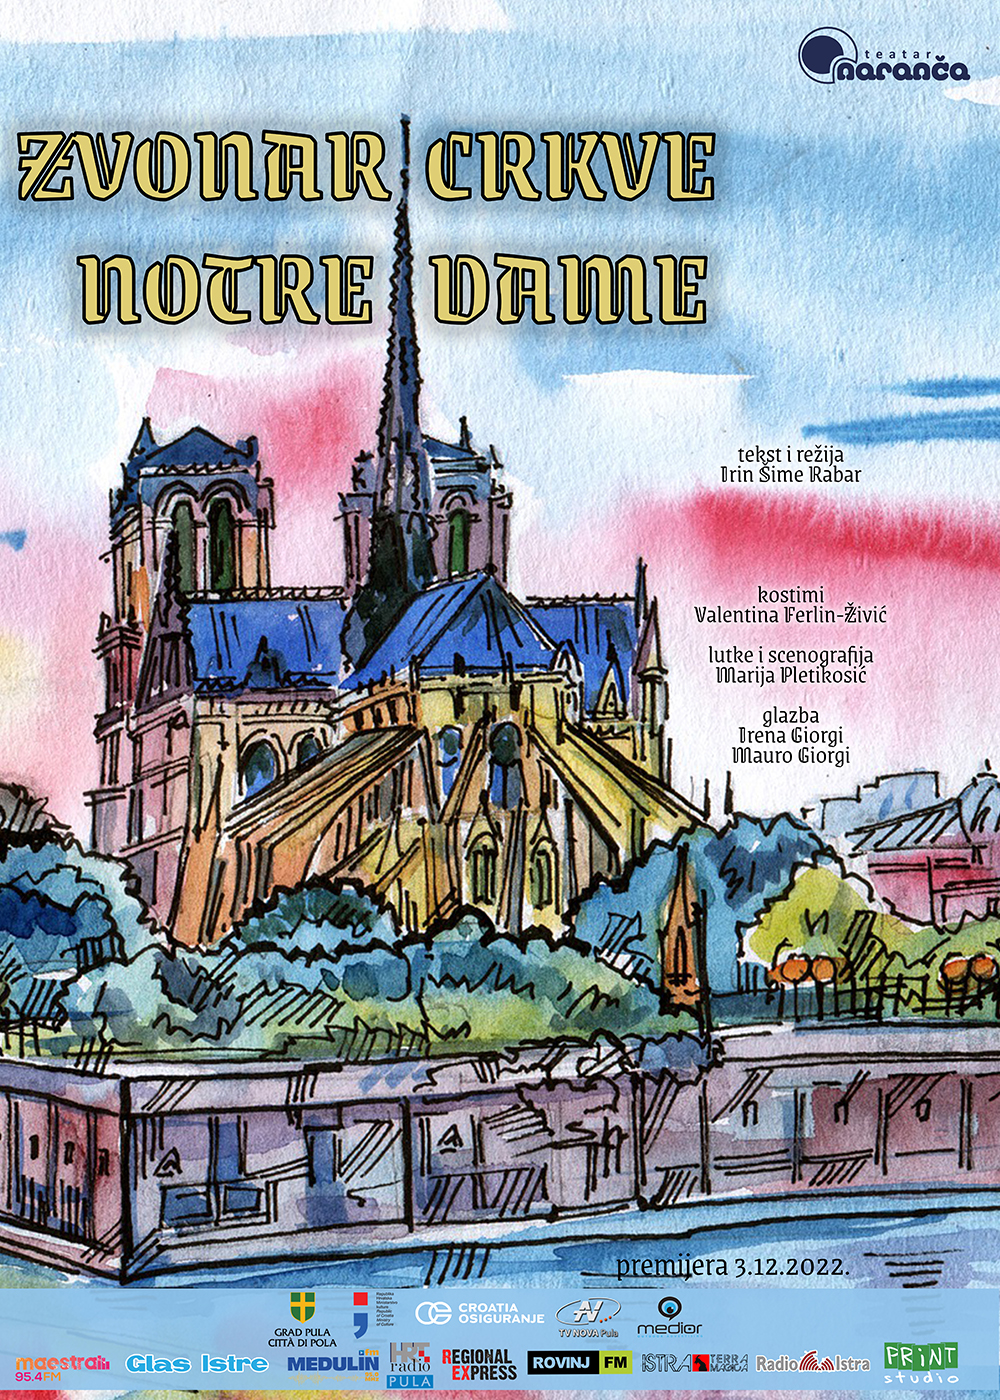 Premijera predstave ‘Zvonar crkve Notre Dame’ u pulskom Teatar Naranča